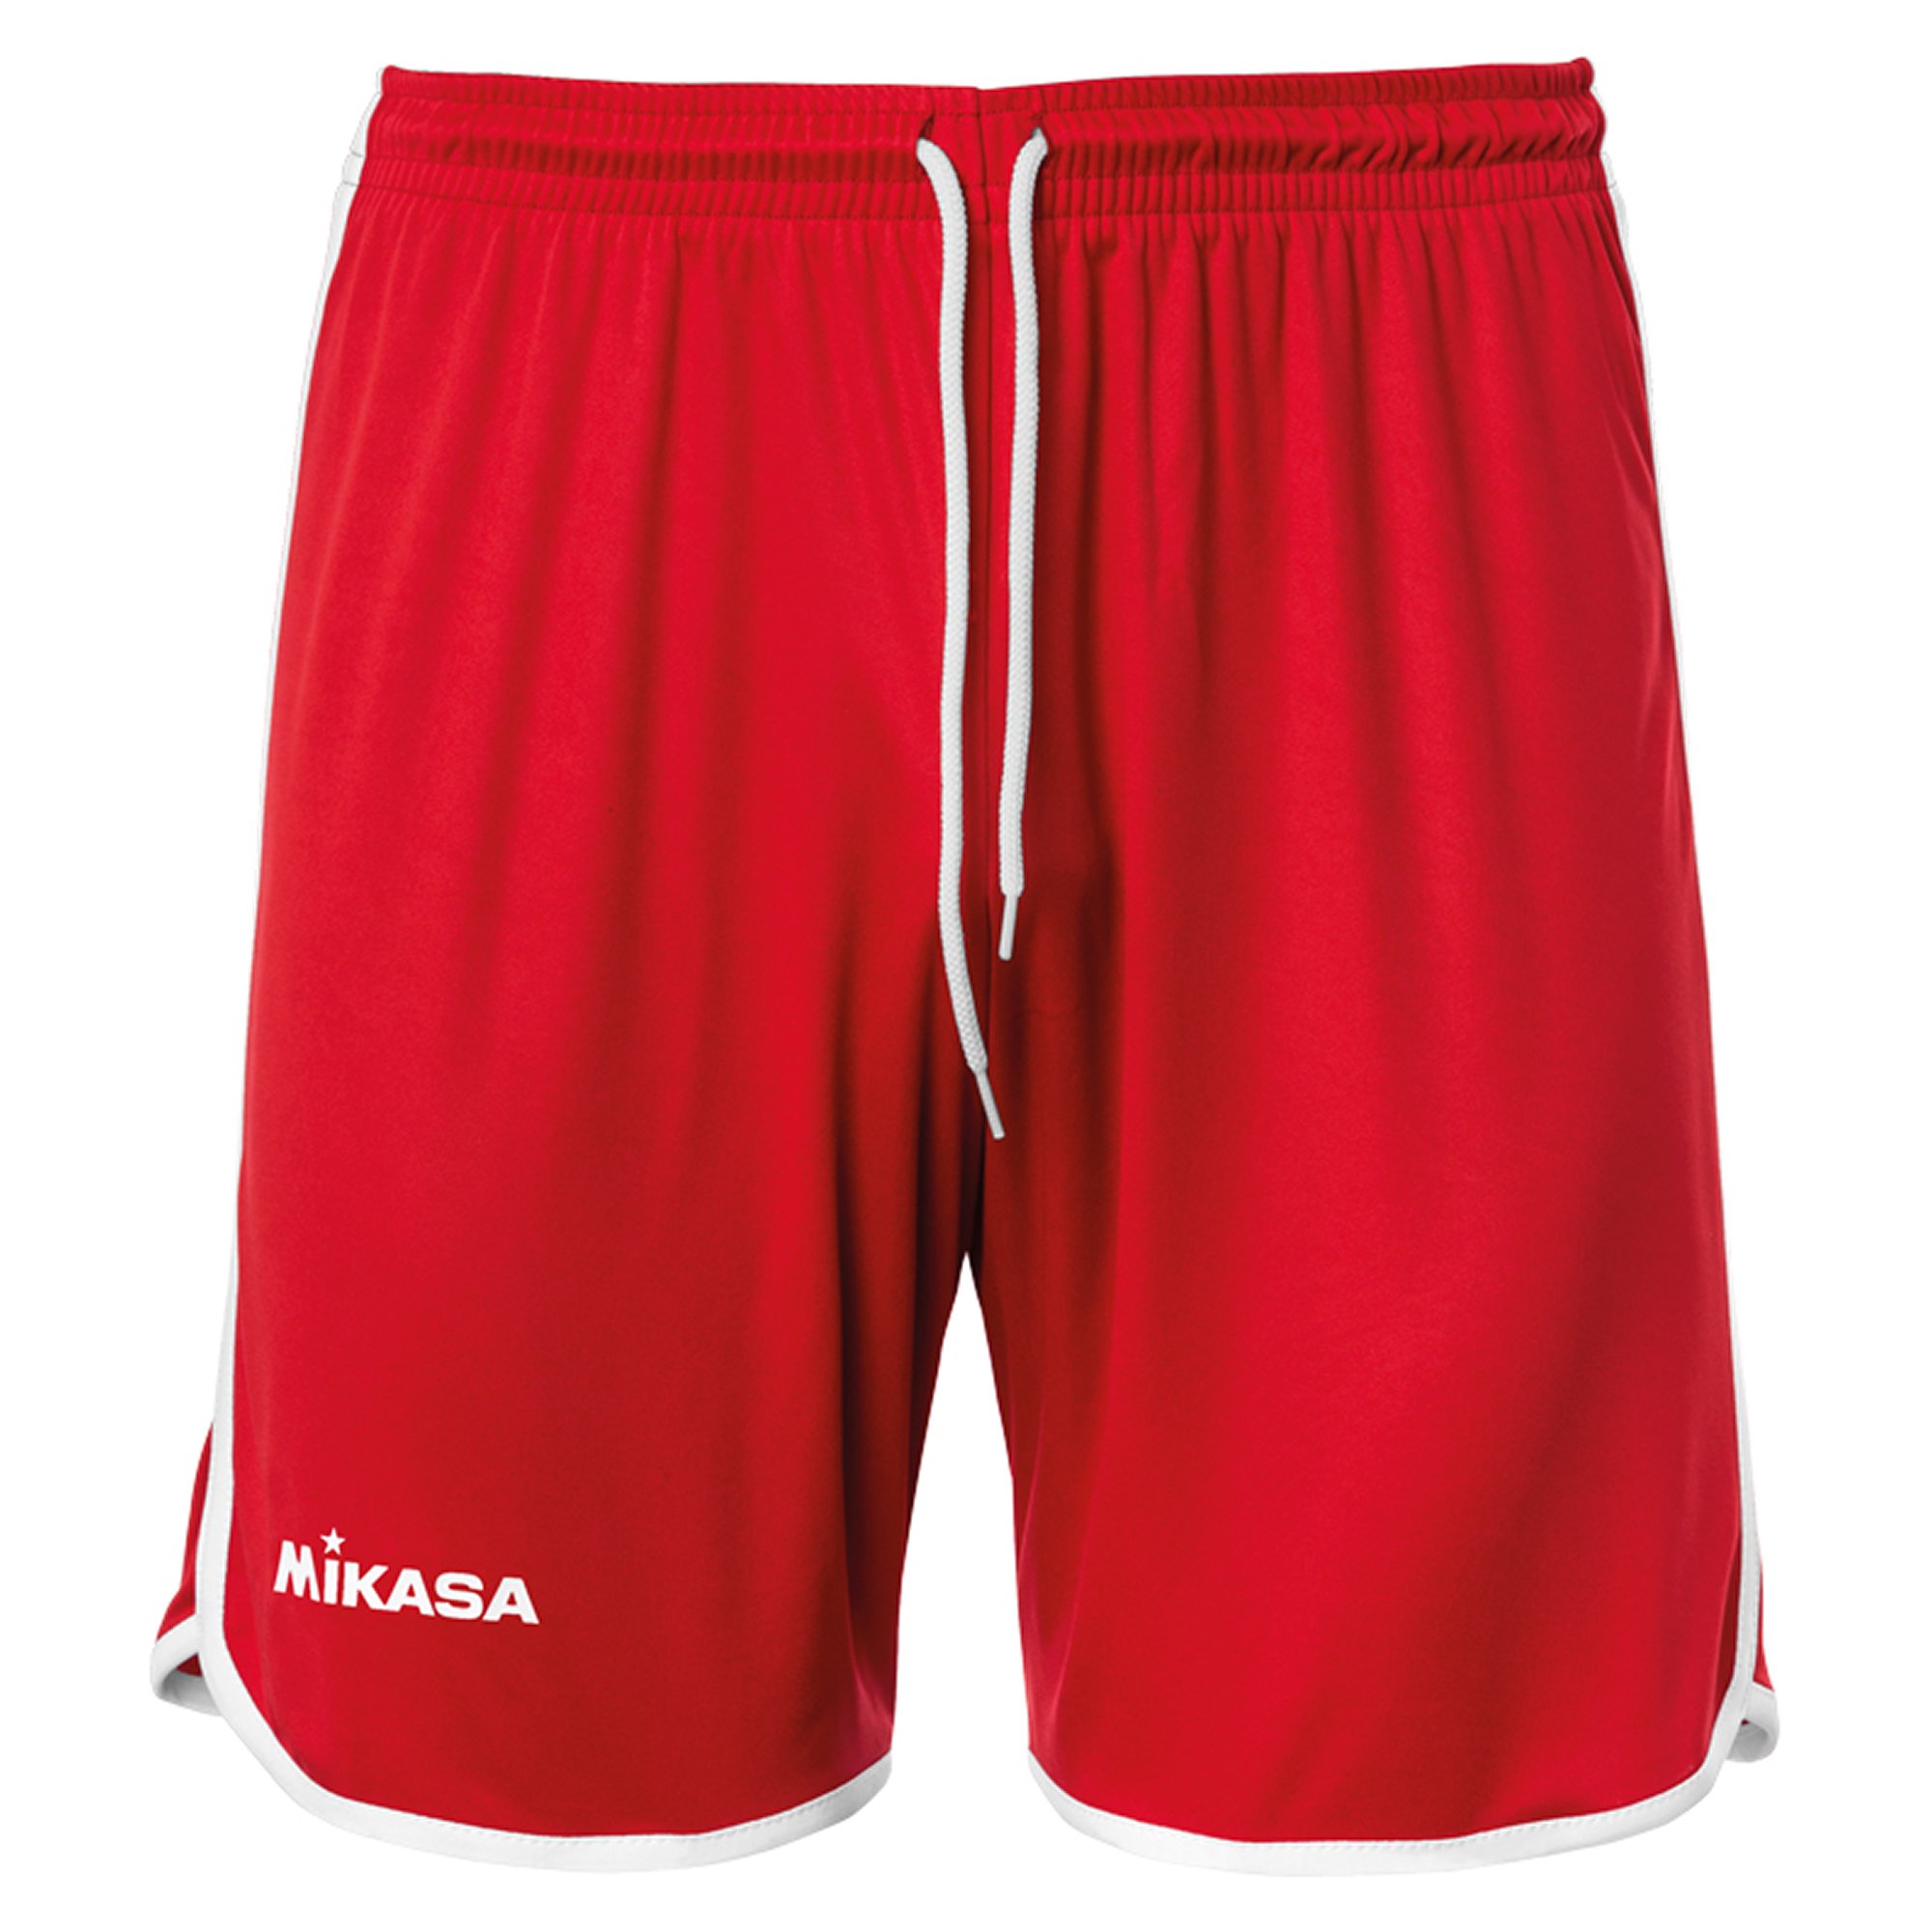 Mikasa Beach Shorts